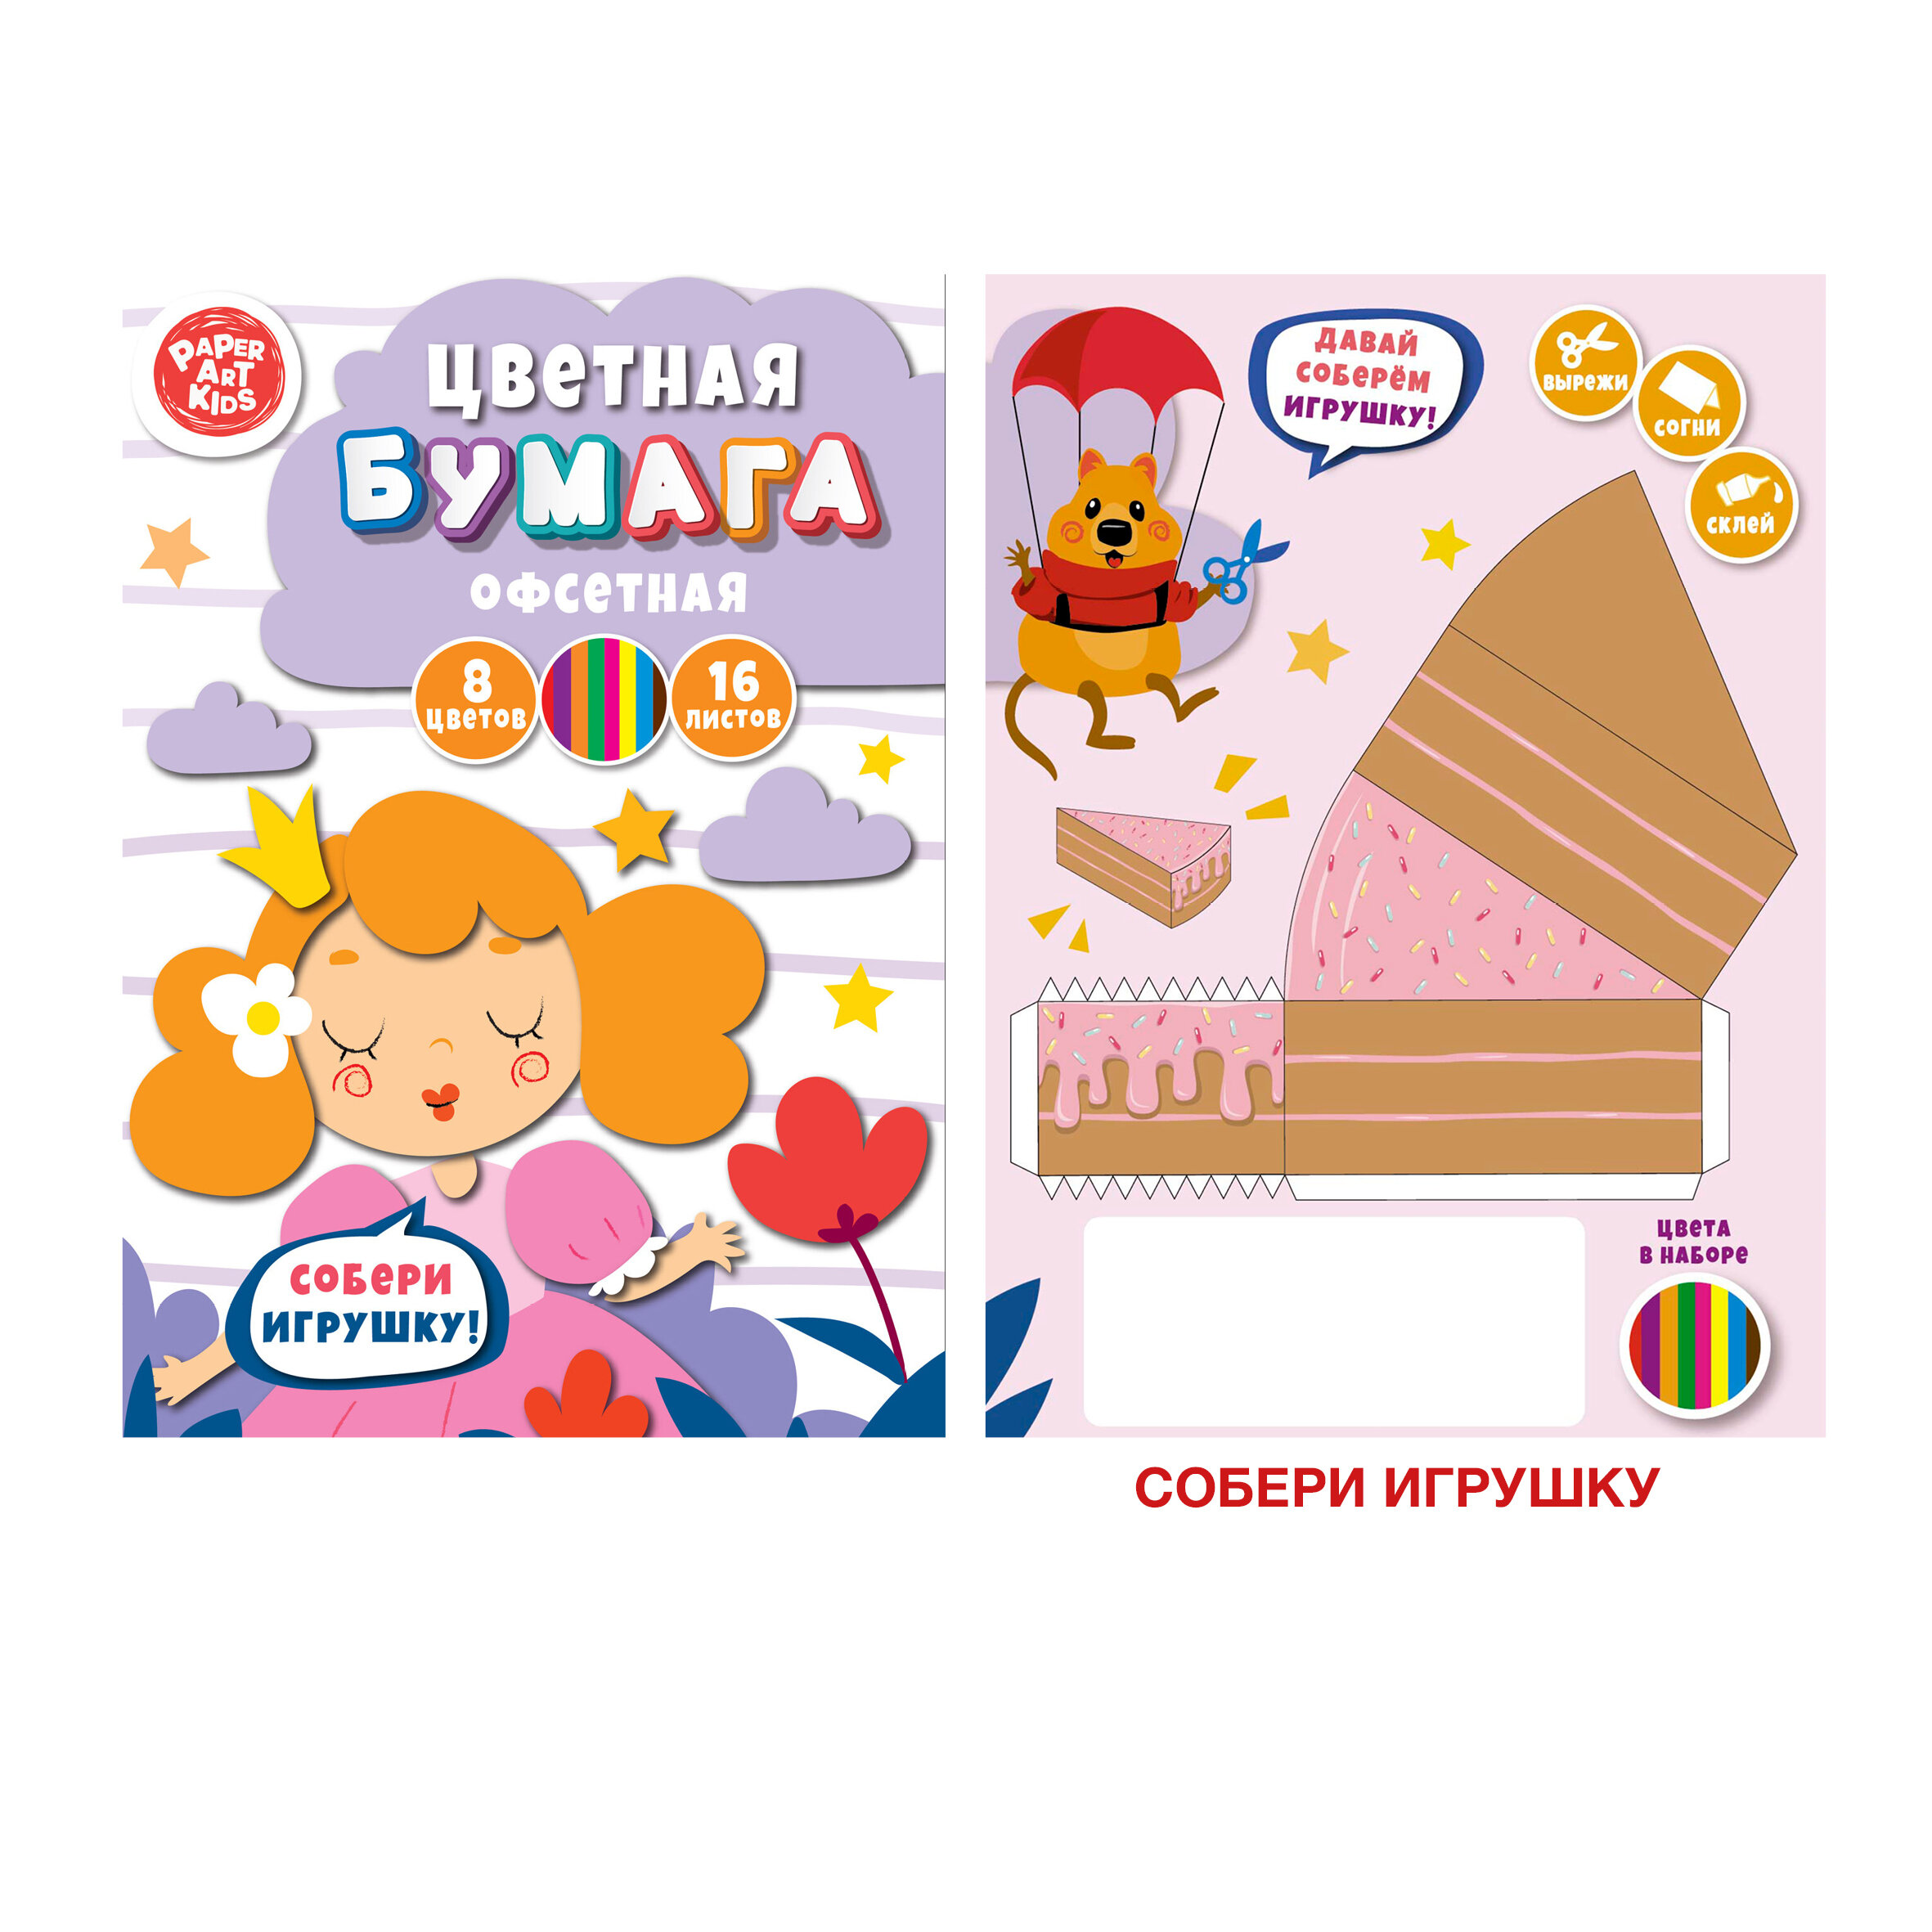 Набор цветной офсетной бумаги 16 листов 8 цветов "Принцесса" ЦБ168394 | Магазин канцтоваров и игрушек Львёнок